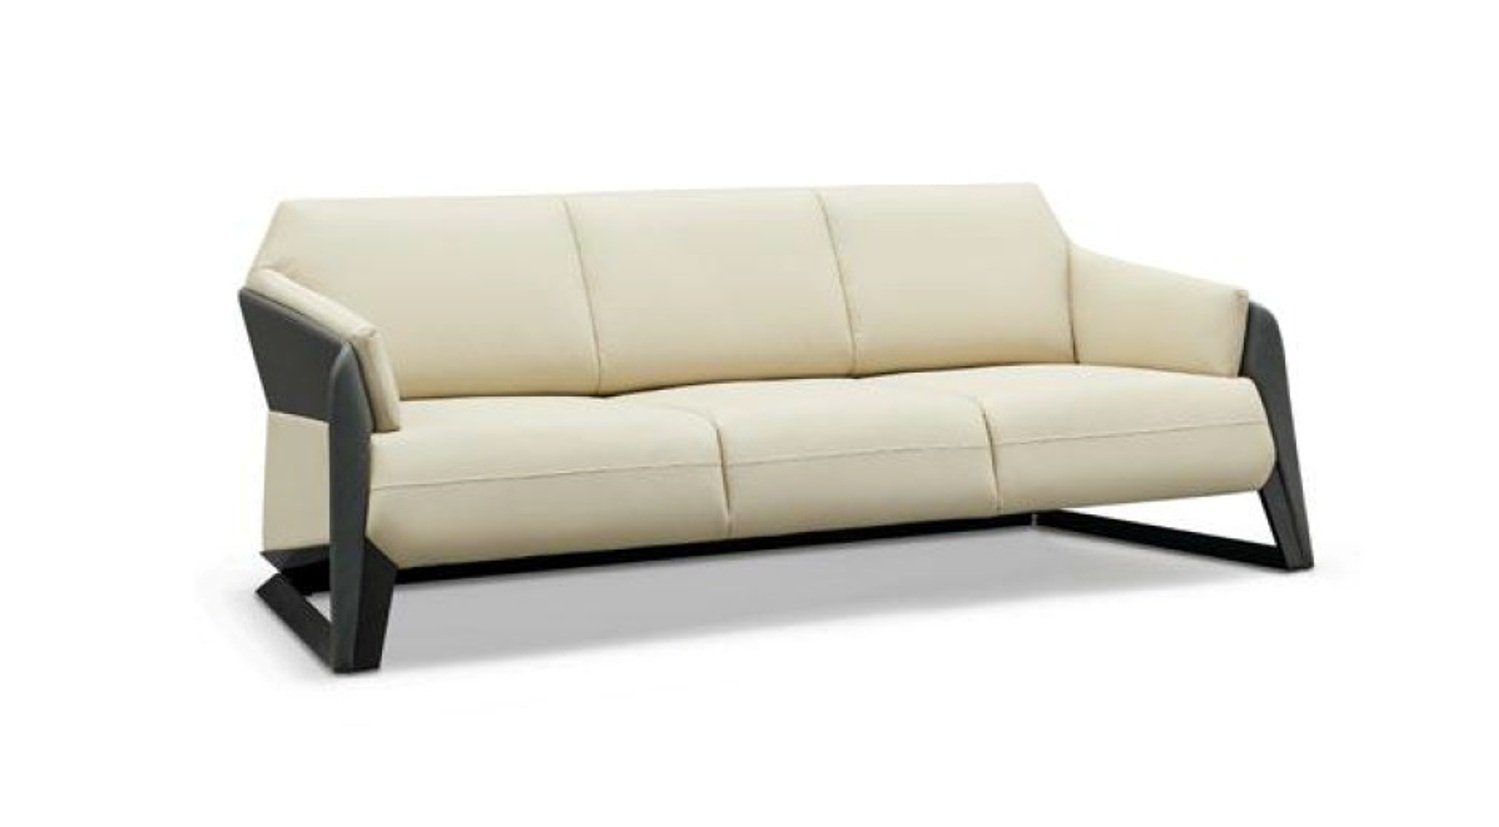 JVmoebel Sofa Europe Ledermöbel Polster Made in Moderne 3-Sitzer Couch Dreisitzer Weißer Neu